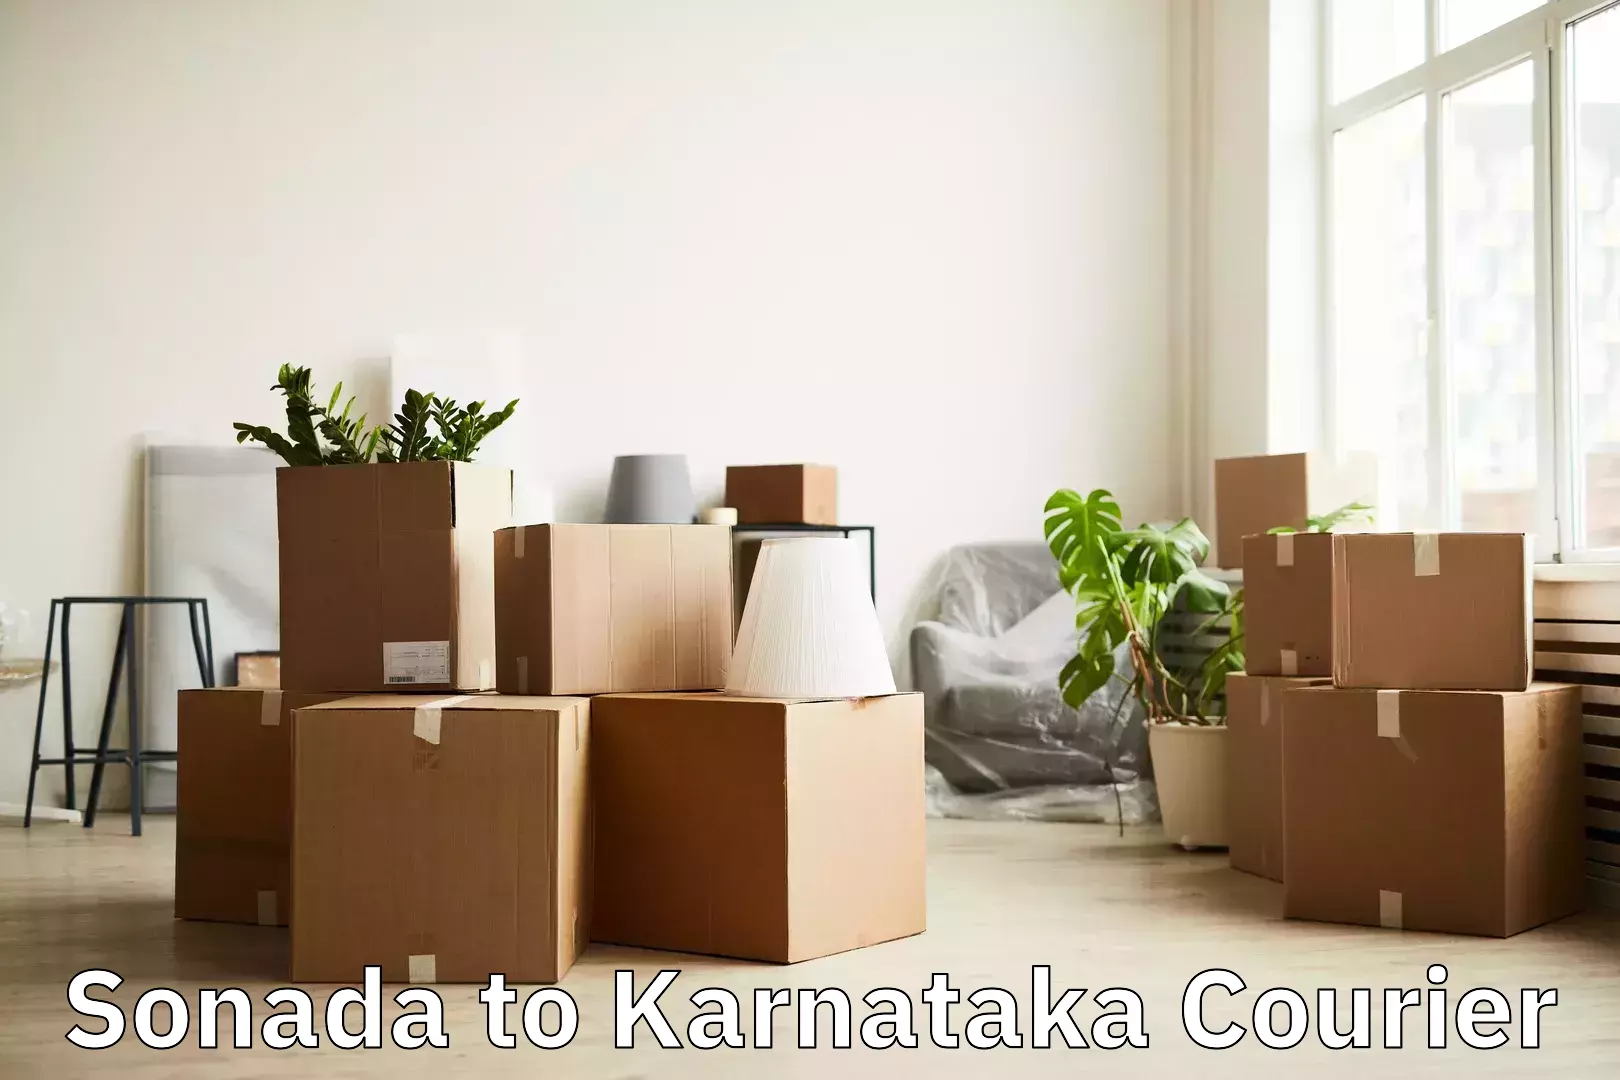 Online luggage shipping Sonada to Kanjarakatte